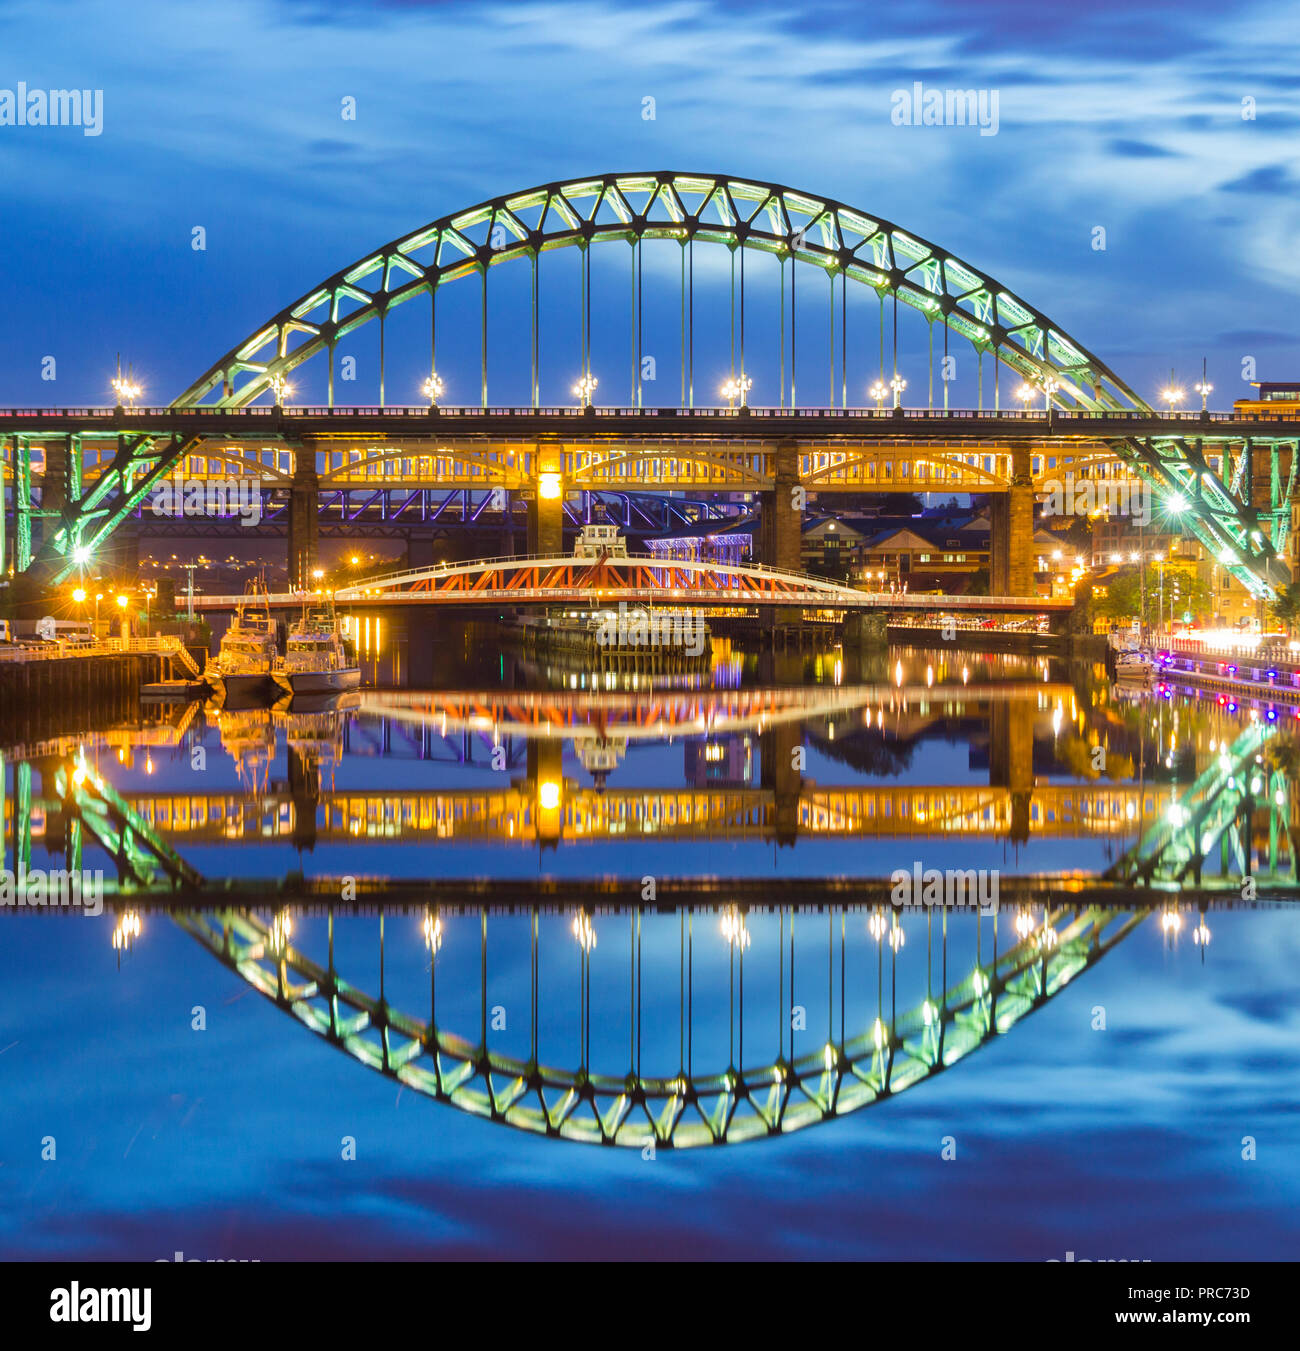 Newcastle Quayside. Vue sur la Tyne, Swing et ponts de haut niveau du quai. Newcastle Upon Tyne, Angleterre, Royaume-Uni Banque D'Images